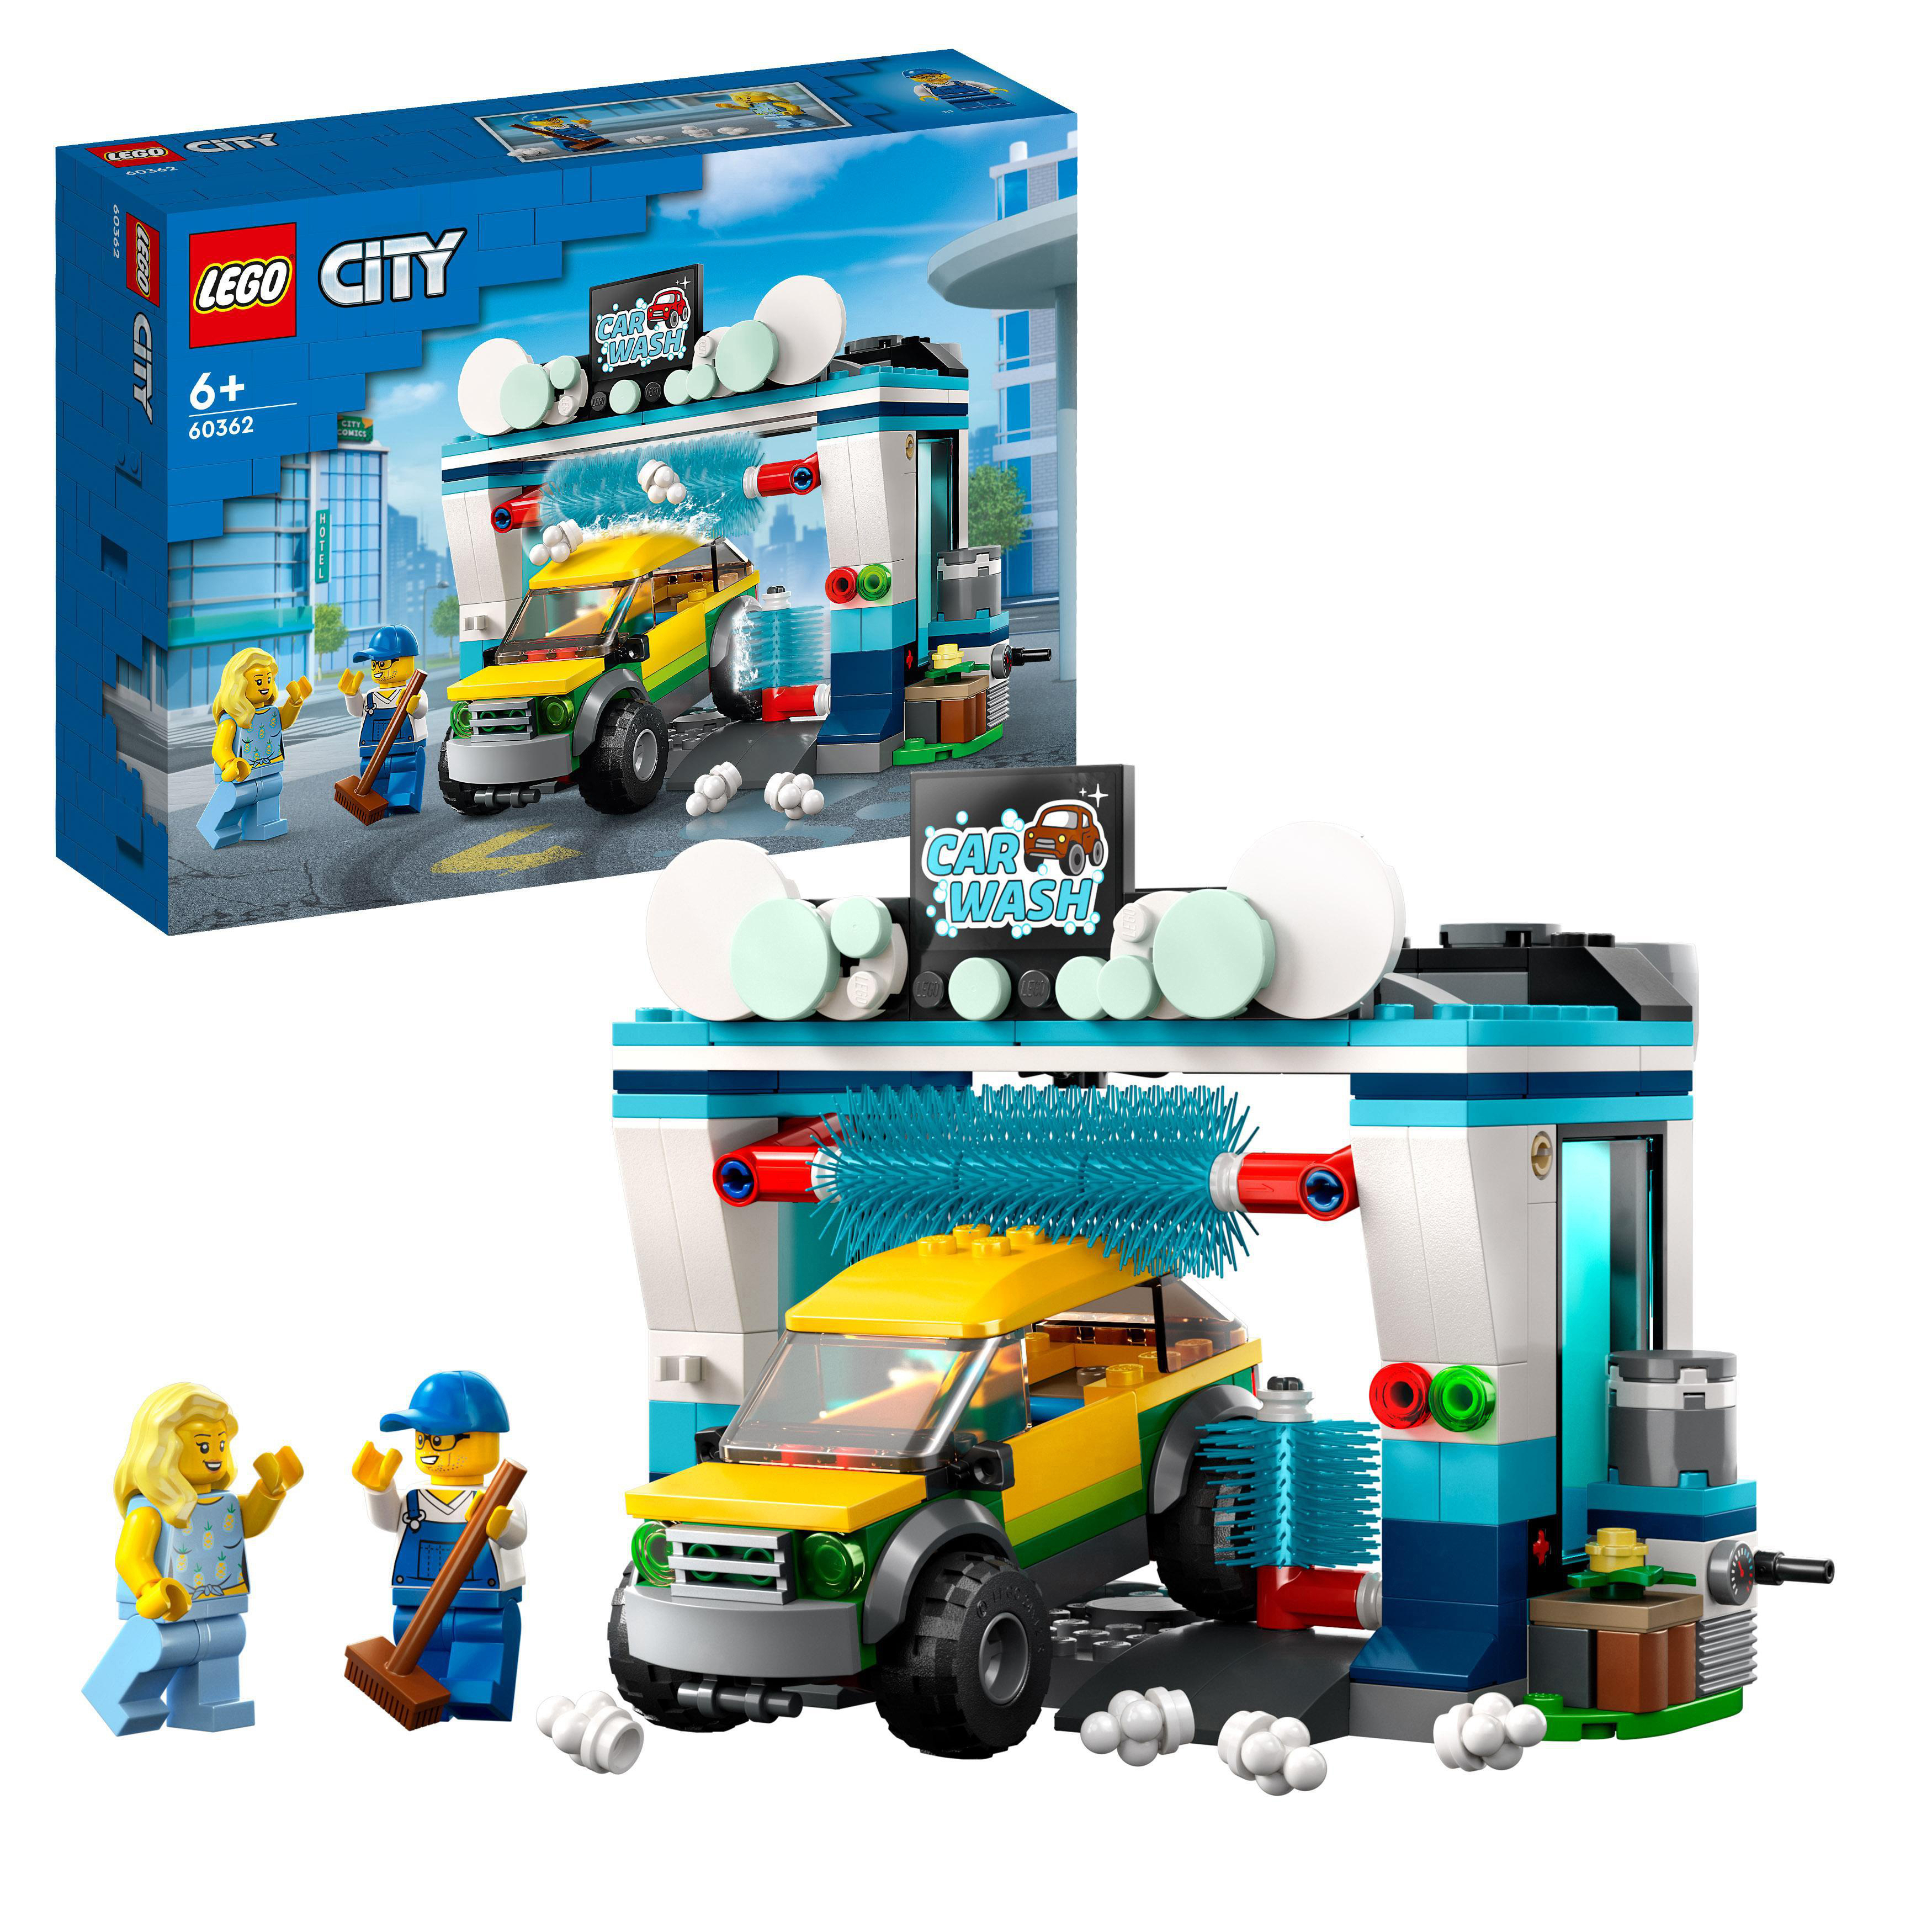 Autowaschanlage 60362 LEGO City Bausatz, Mehrfarbig